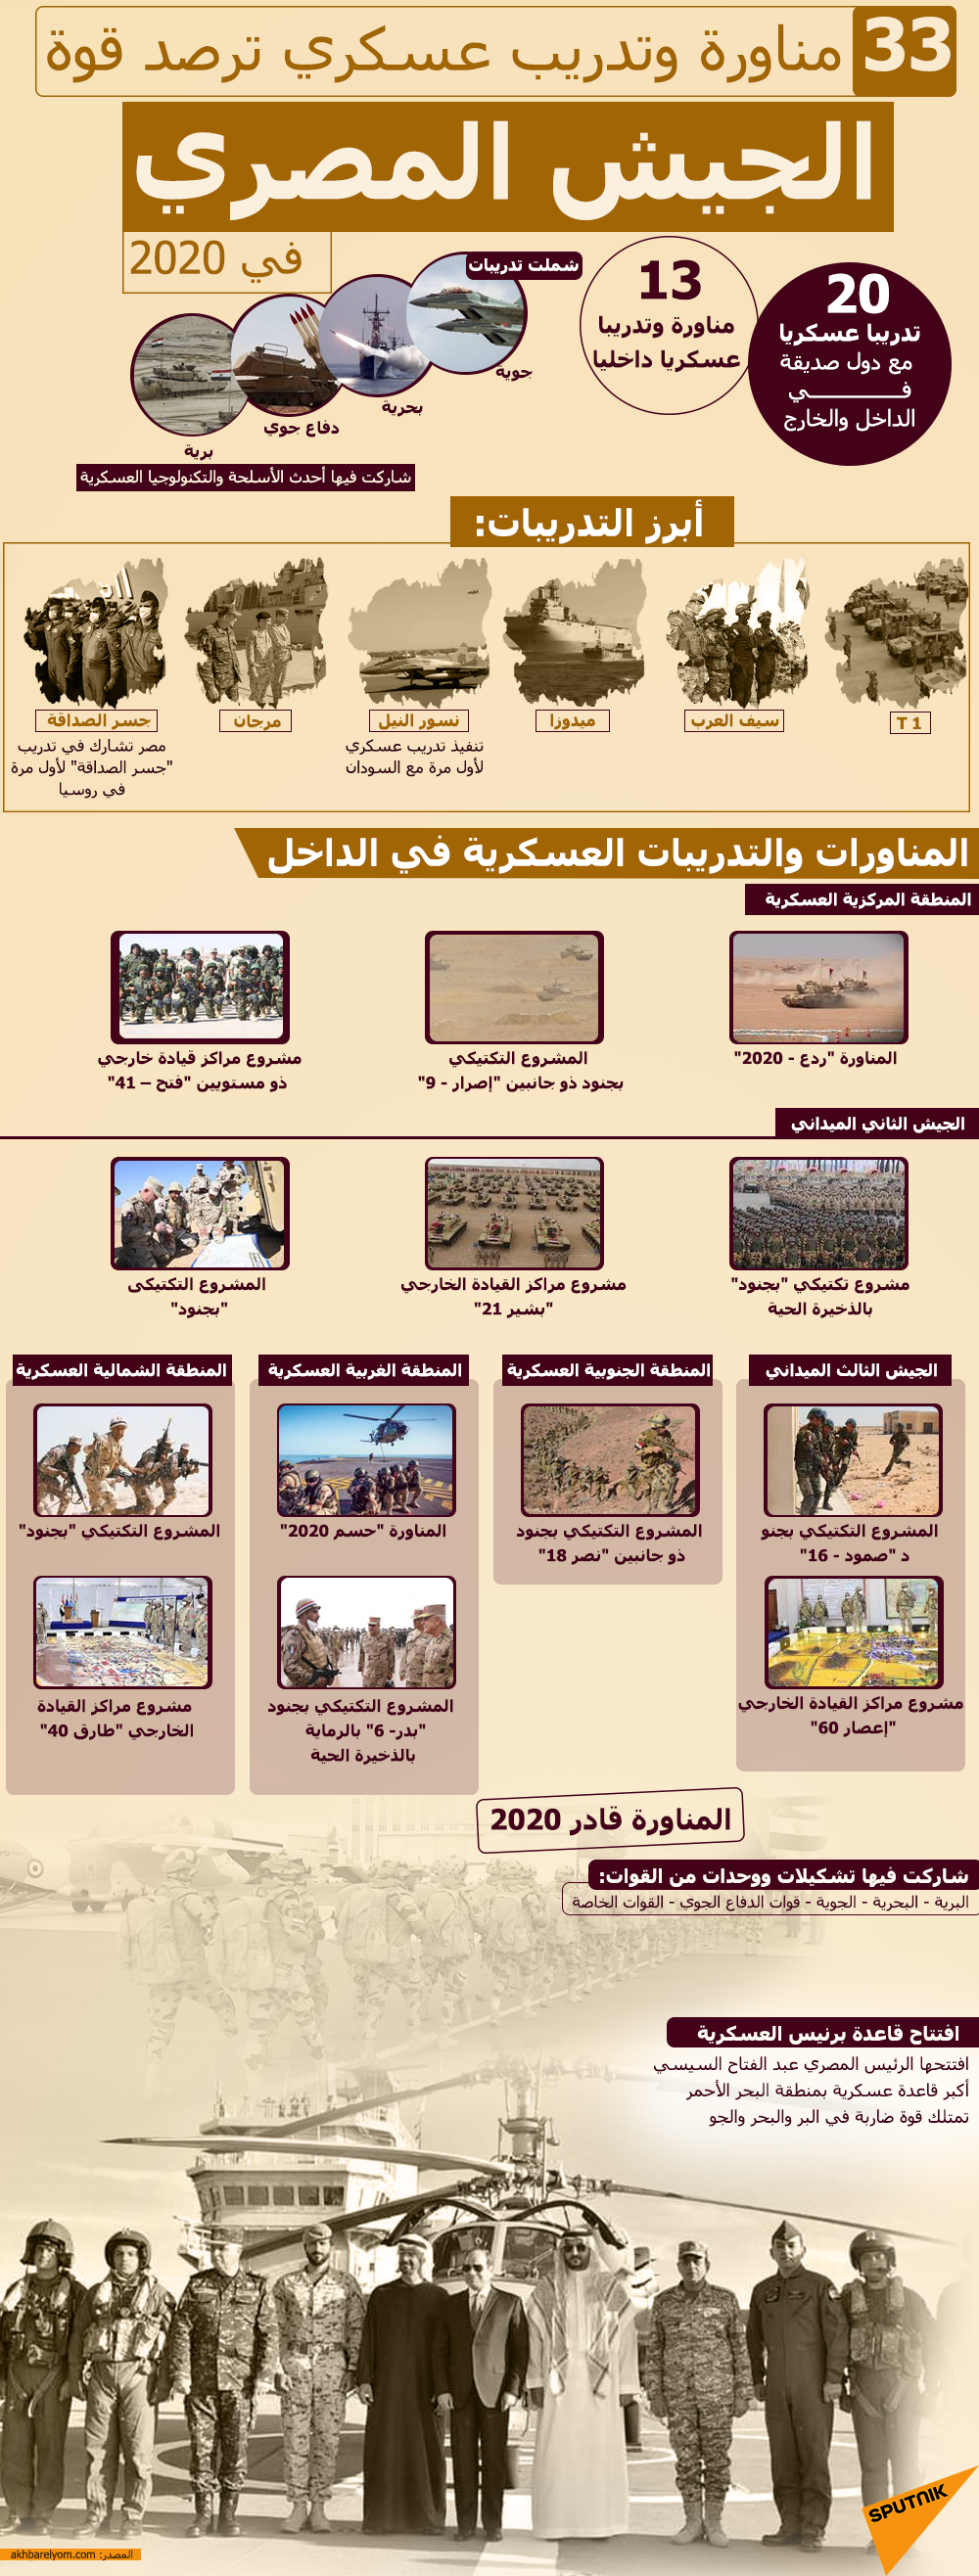 33 مناورة وتدريب عسكري ترصد قوة الجيش المصري في 2020 - سبوتنيك عربي